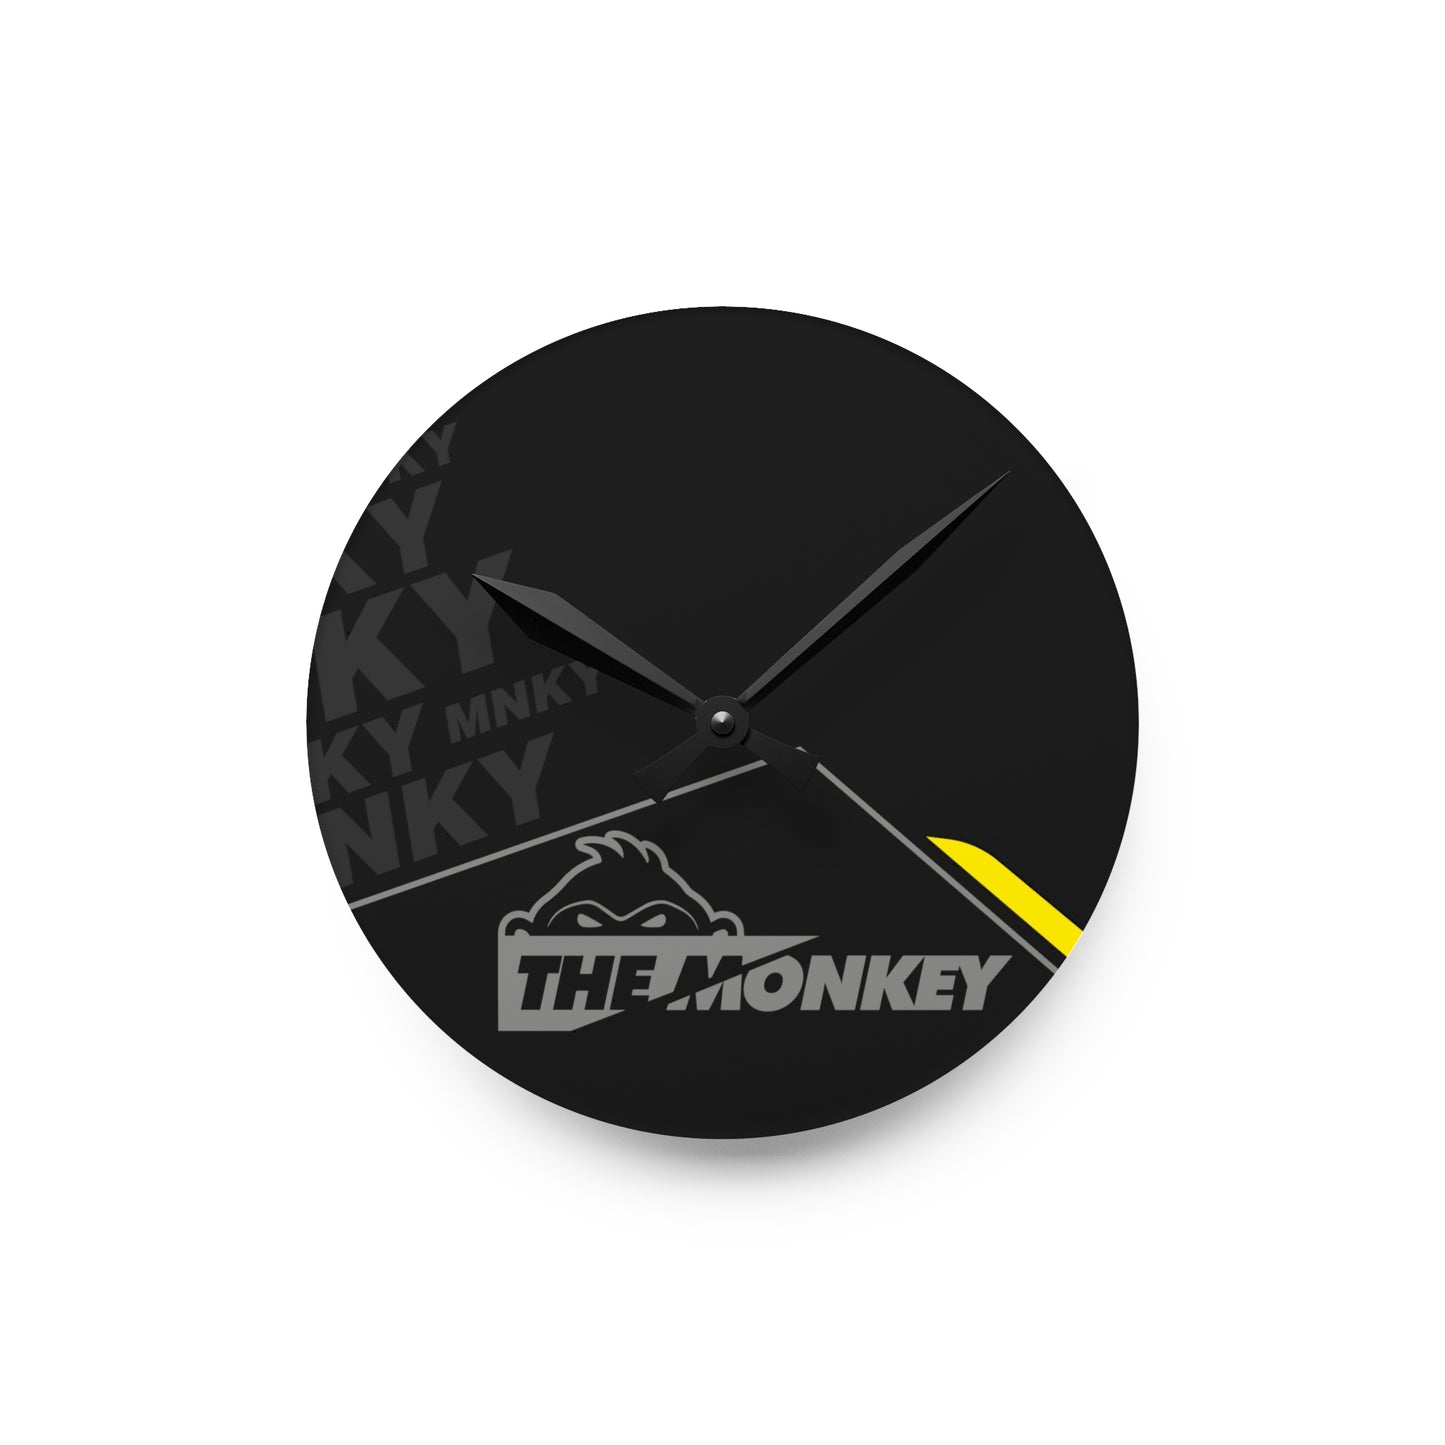 The Monkey Wall Clock